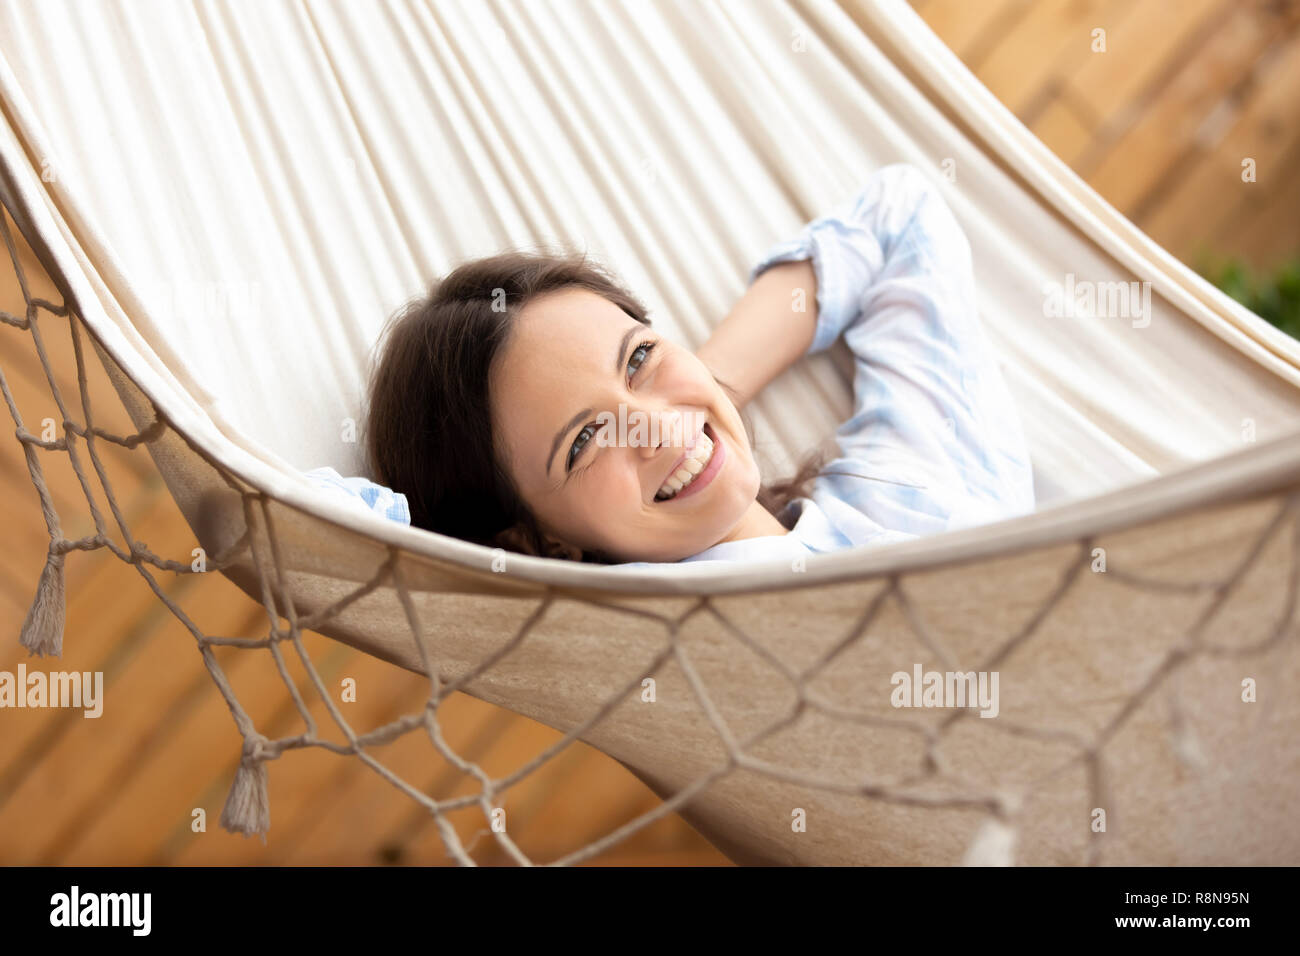 Sorridenti giovane donna giacente in amaca cercando in base alla distanza Foto Stock